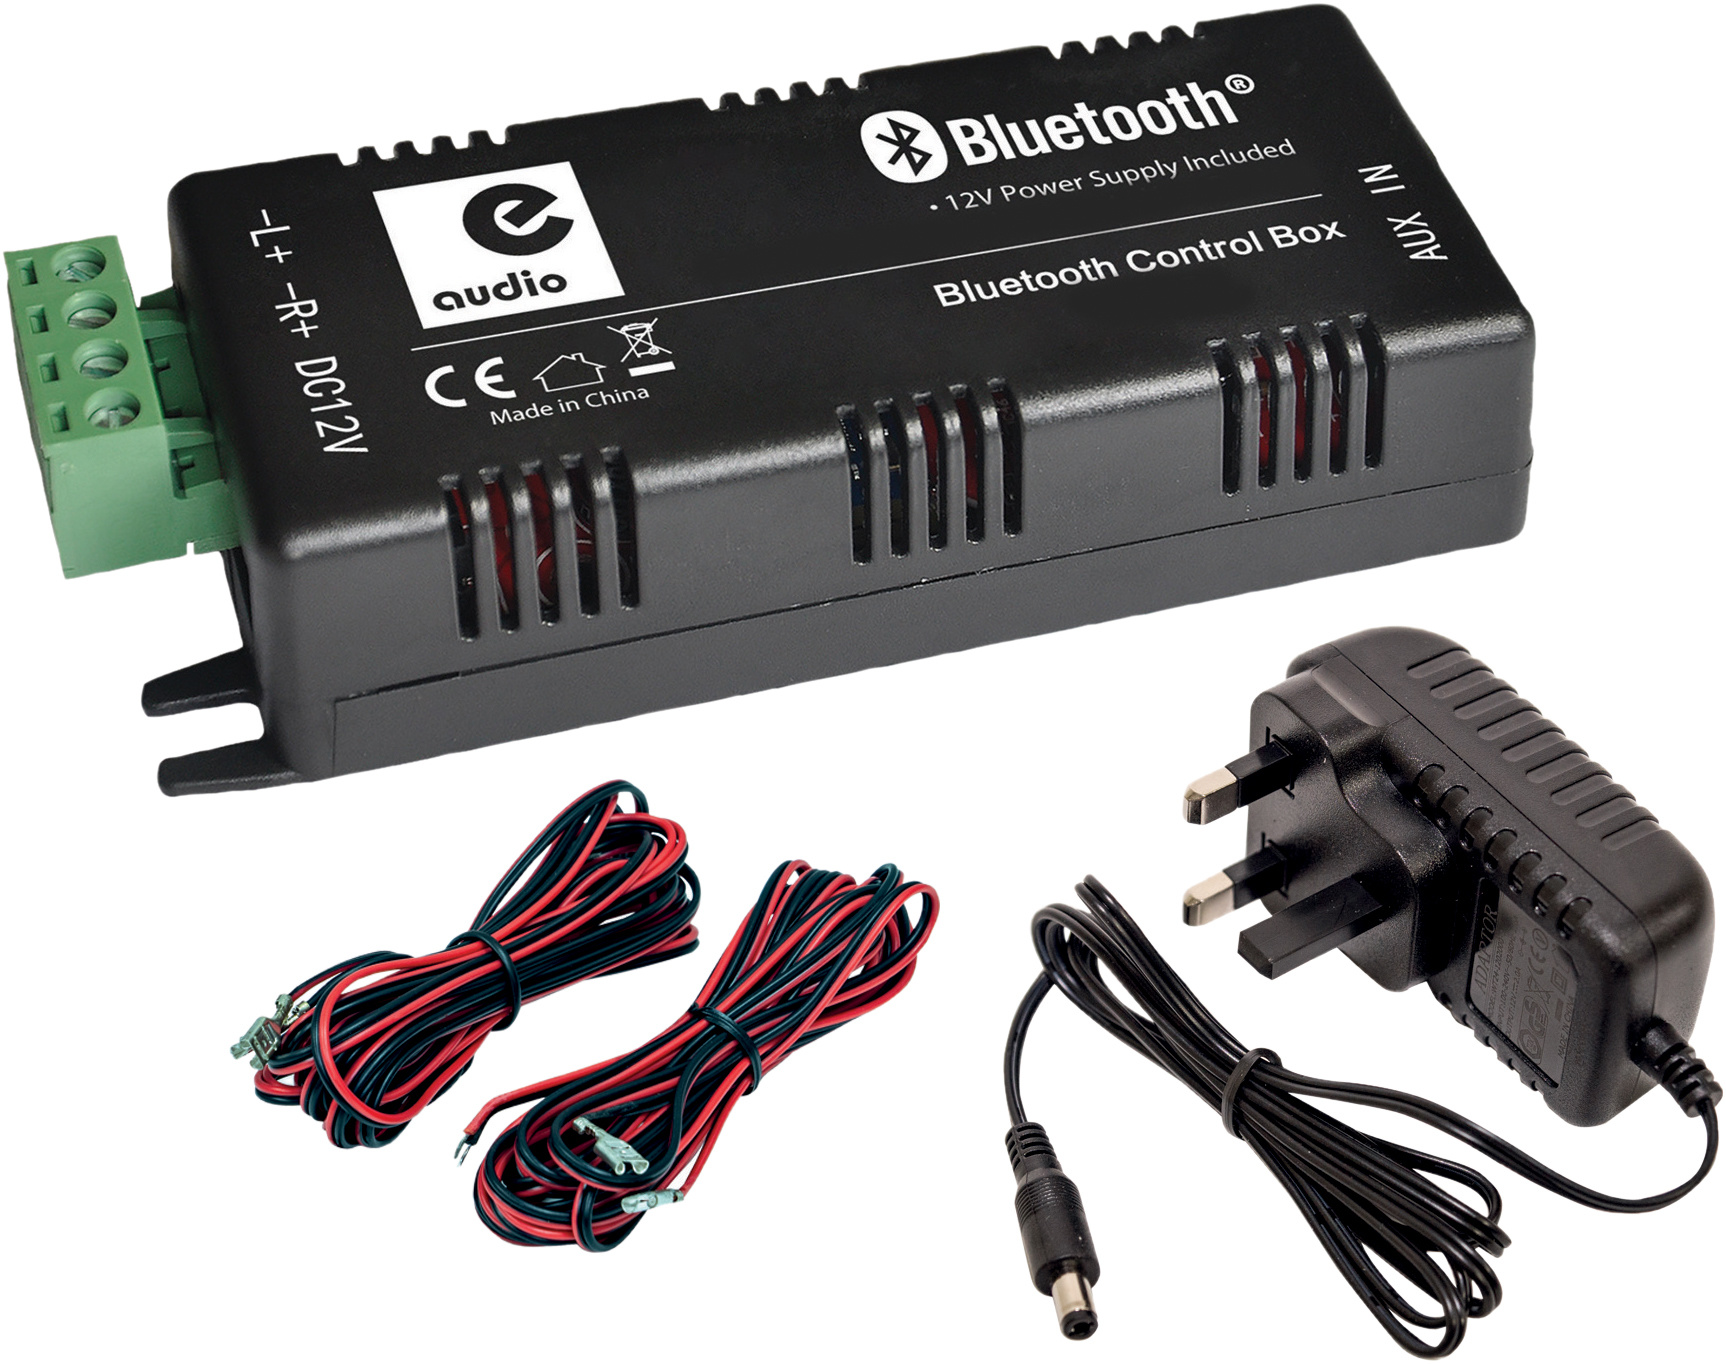 vergeetachtig Uitrusting klasse E-Audio B426BL mini versterker met Bluetooth en AUX input 2 x 15 watt -  Maxtotaal